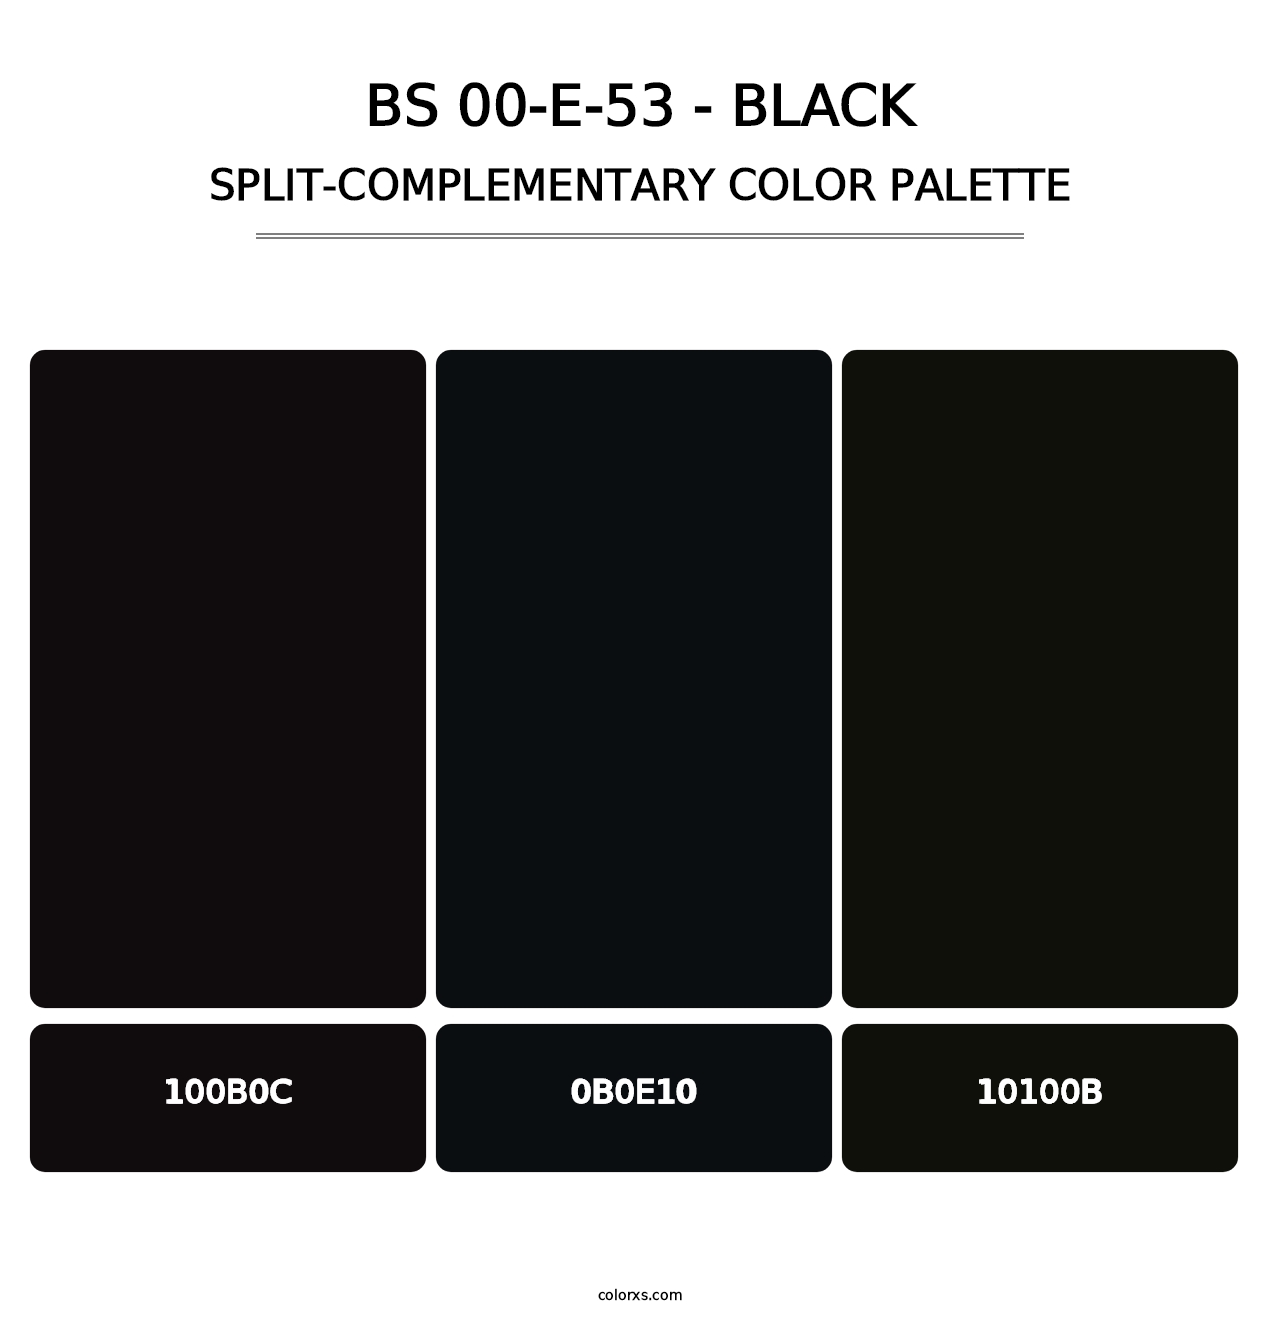 BS 00-E-53 - Black - Split-Complementary Color Palette